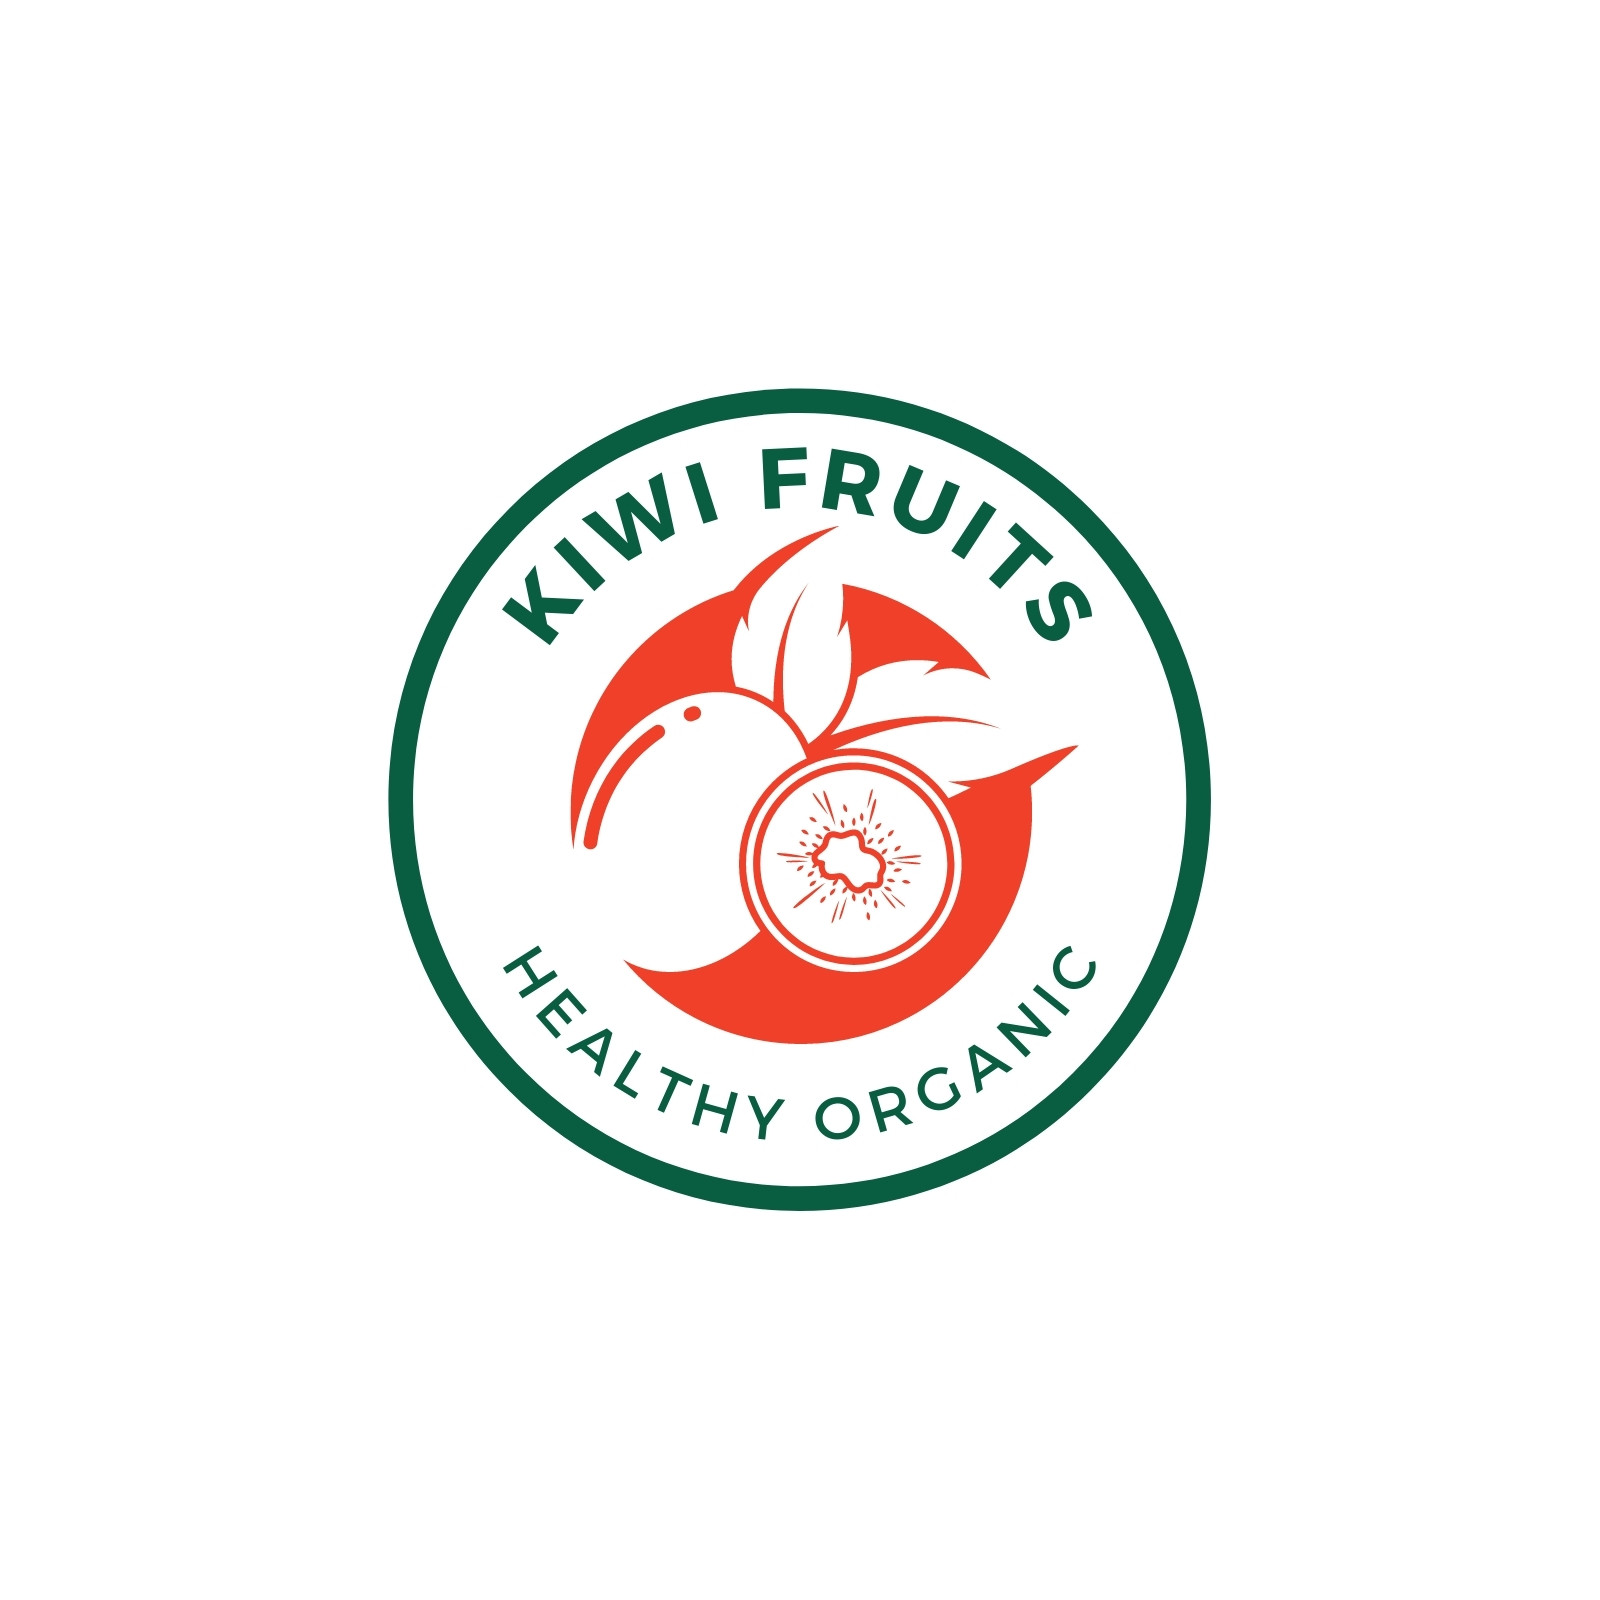 Kiwi  Kiwi vector, Logo design tutorial, Kiwi